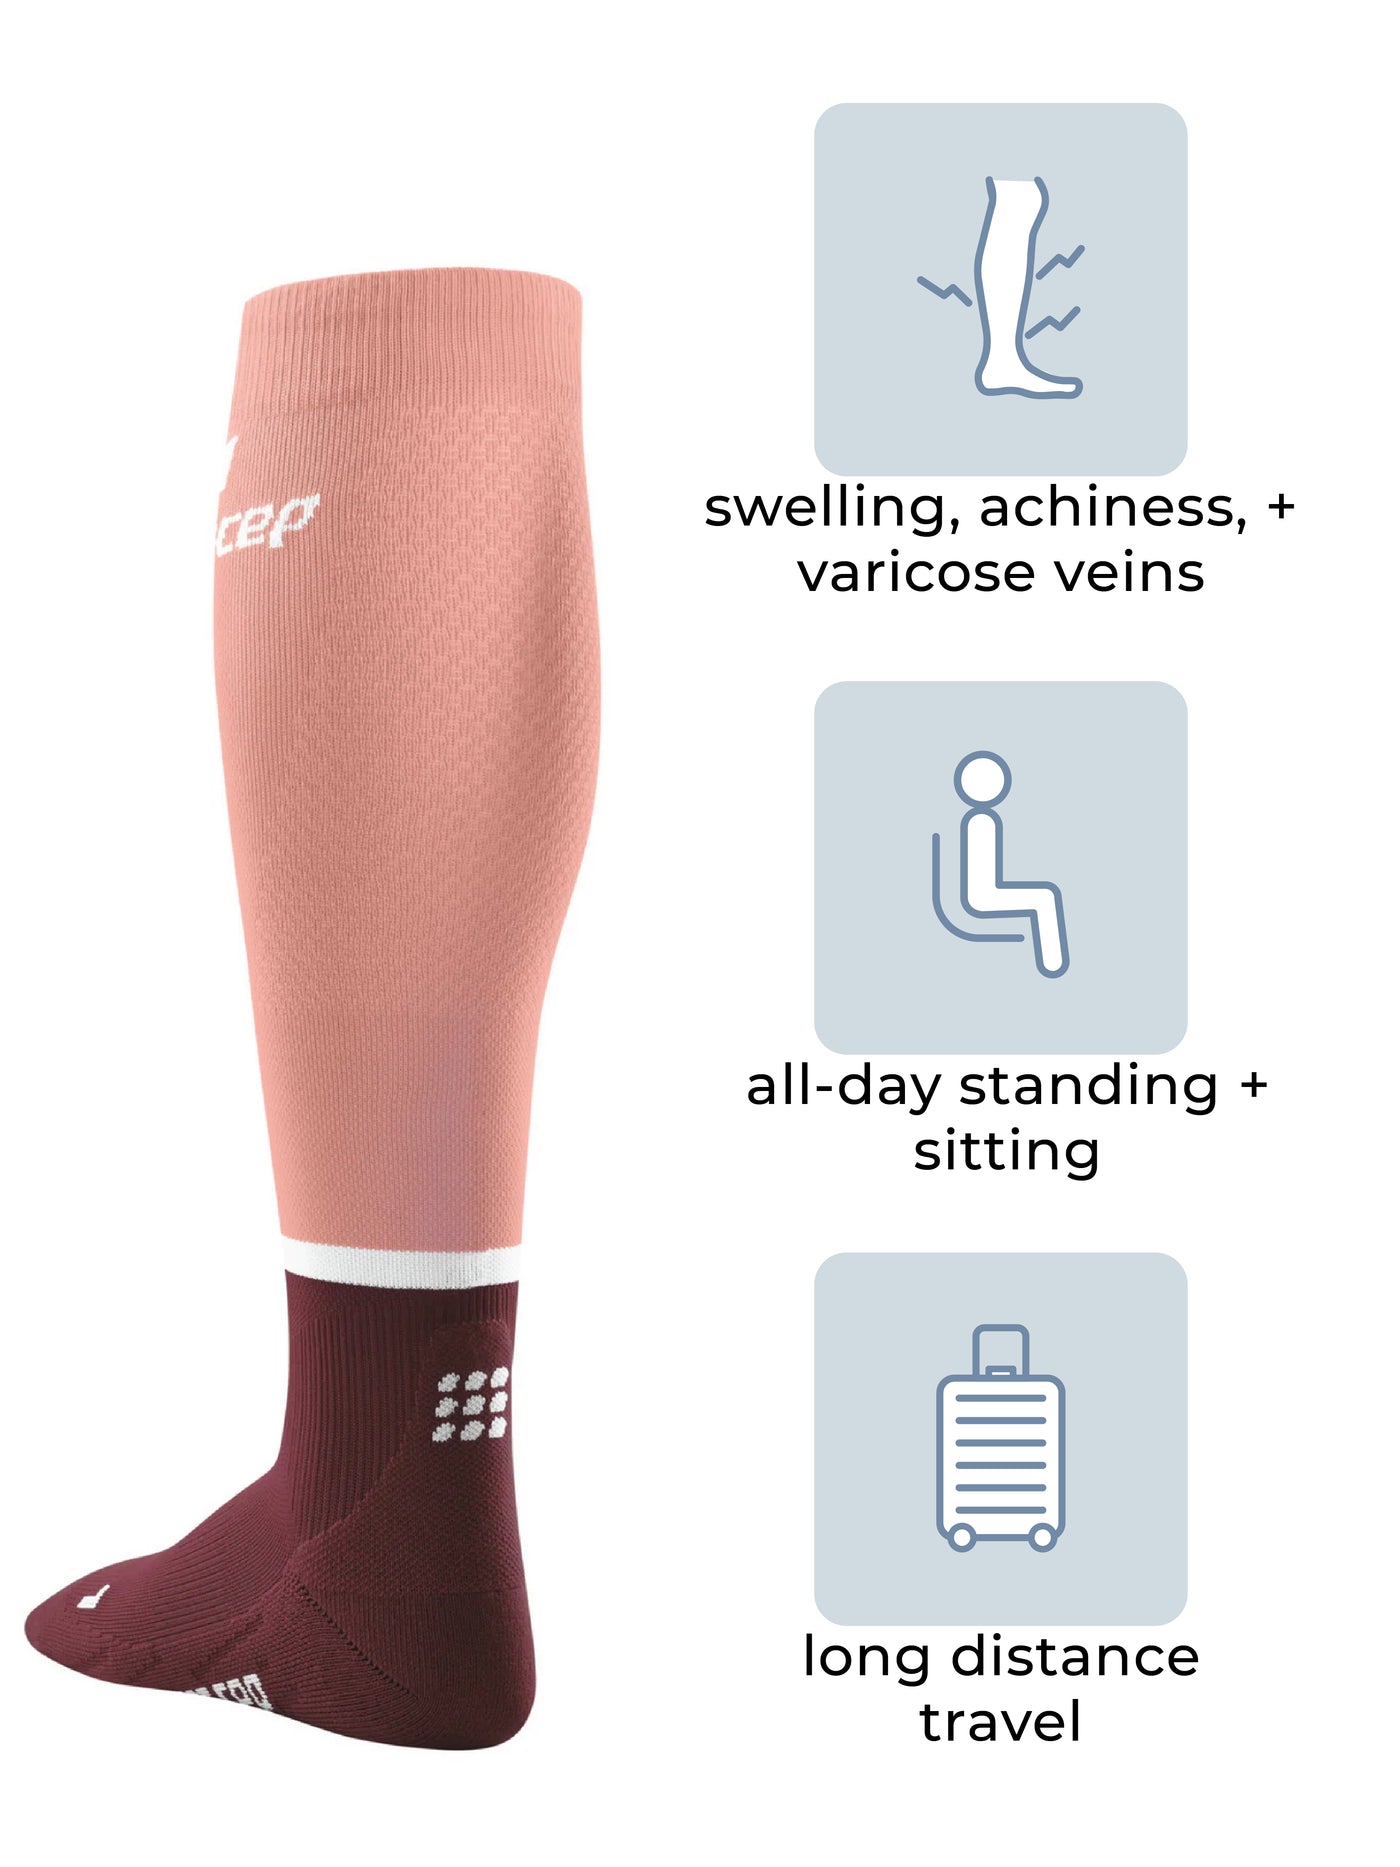 CEP Tall Compression Socks, Men